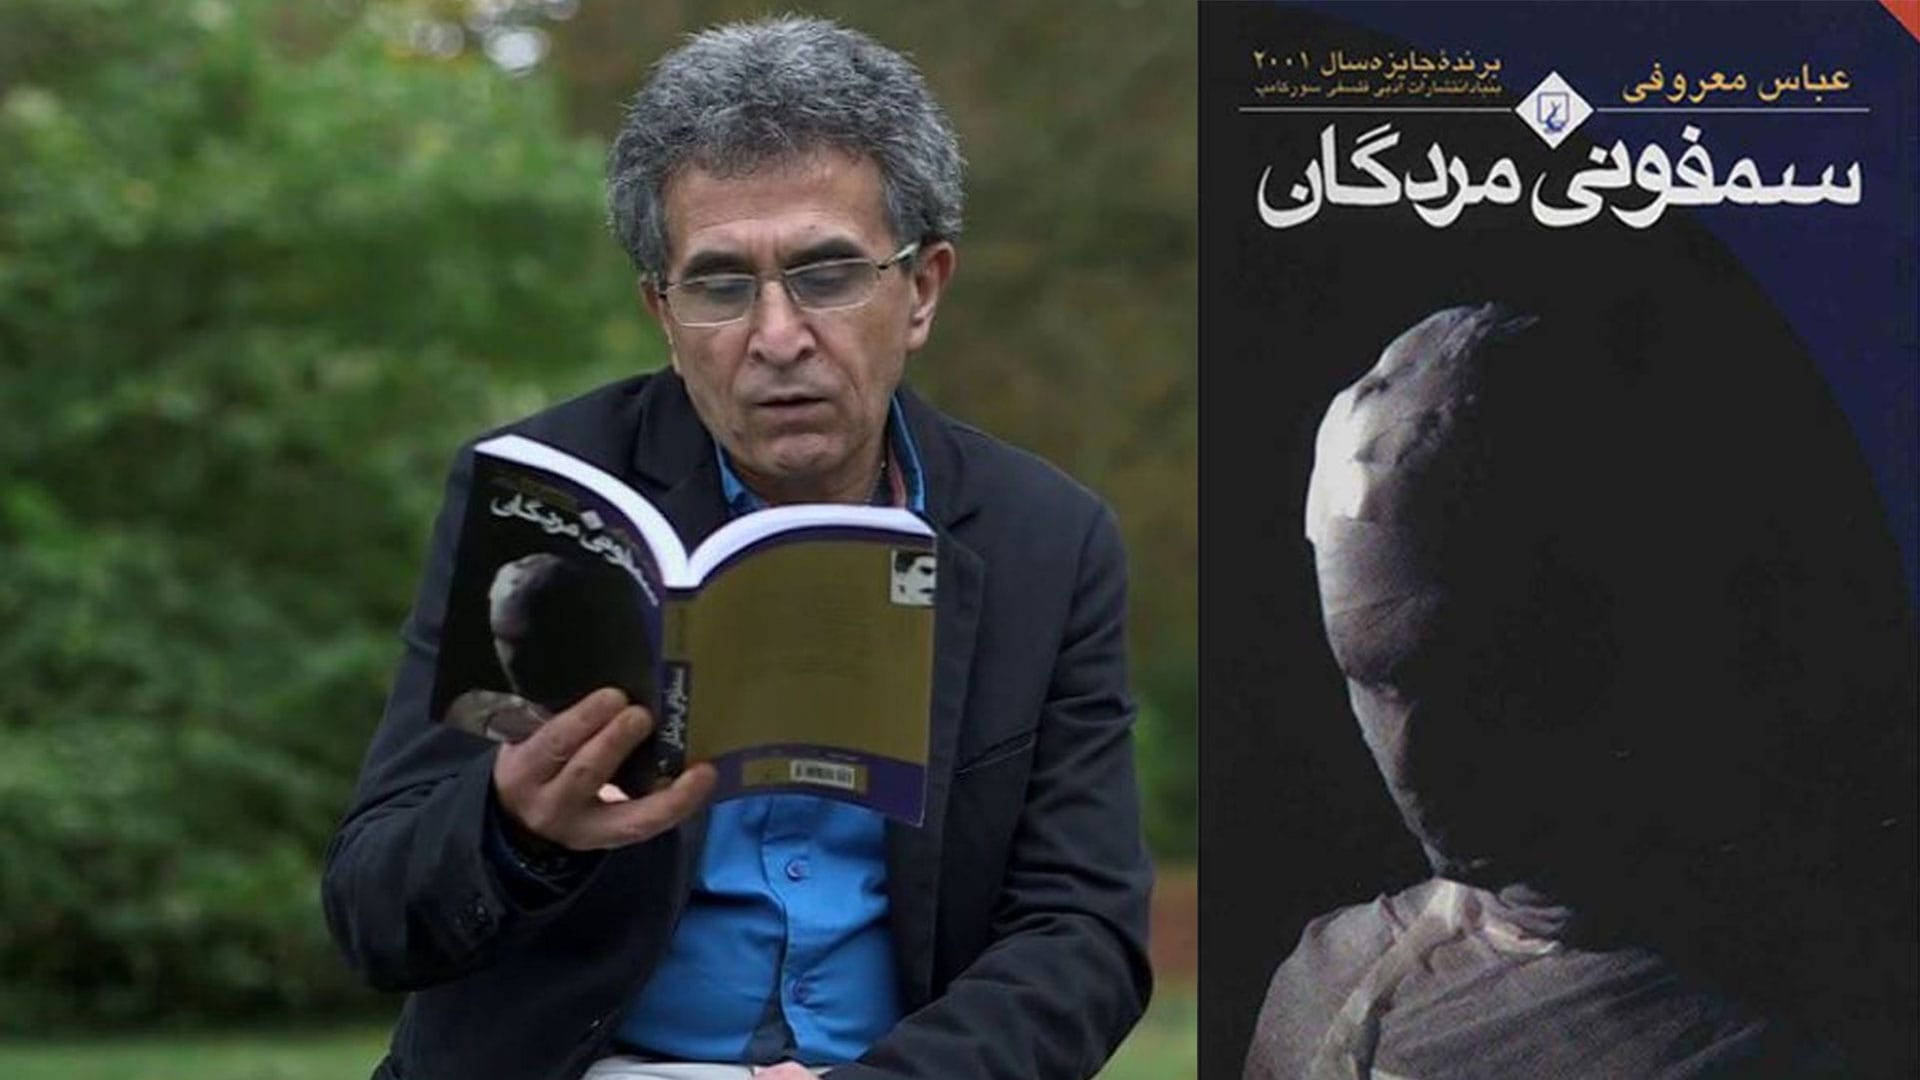 تصویر جلد رمان سمفونی مردگان و عباس معروفی در حال خواندن کتاب